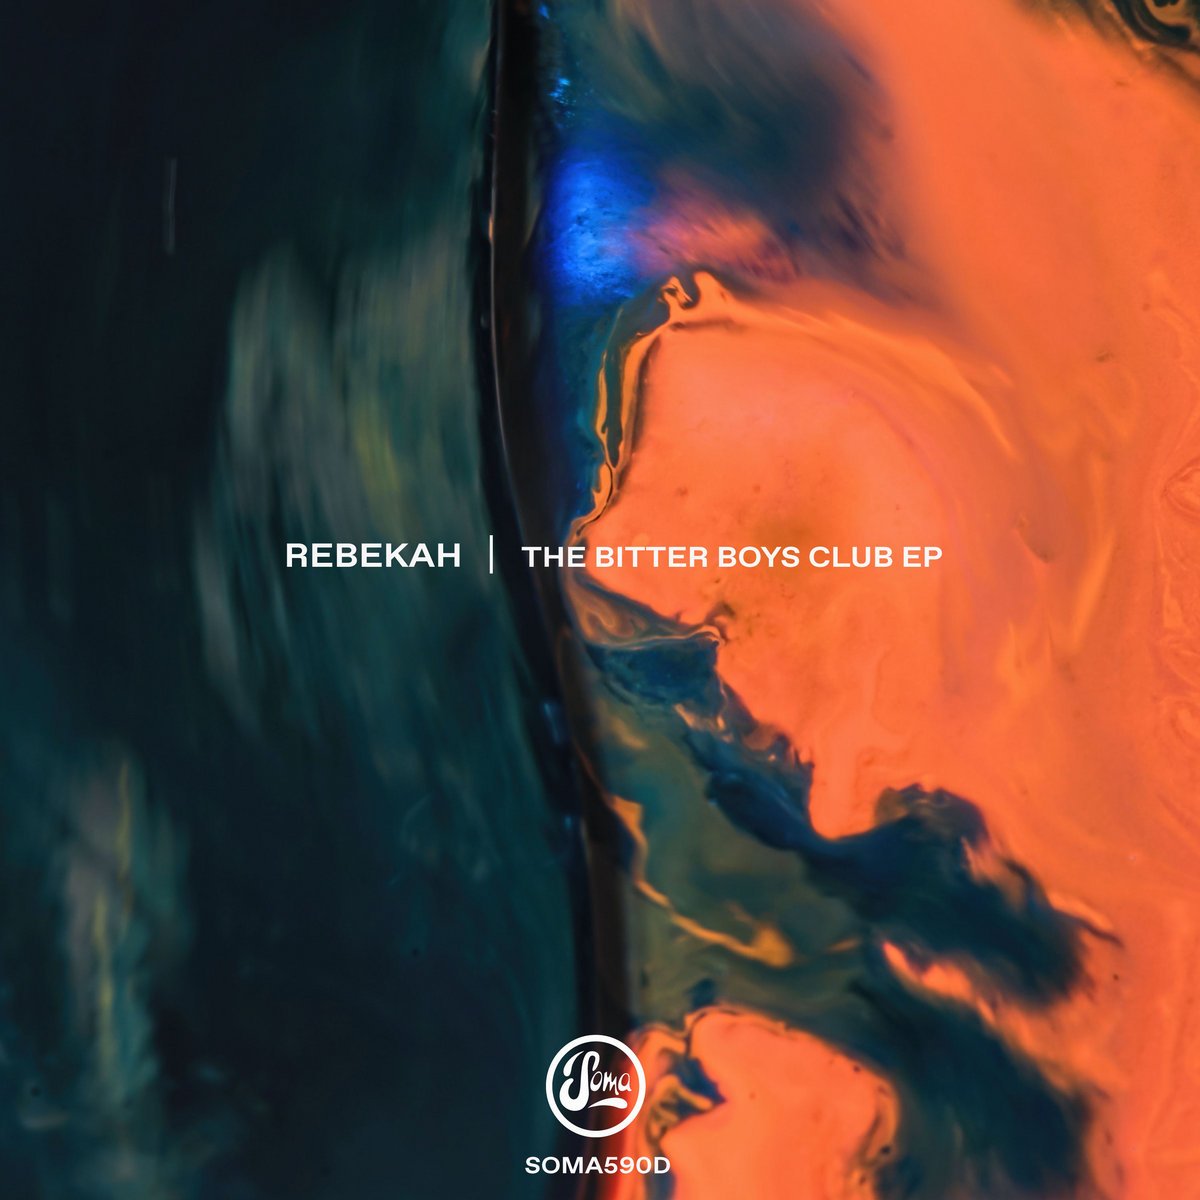 Rebekah-The Bitter Boys Club EP-(SOMA590D)-24BIT-WEB-FLAC-2020-BABAS Download